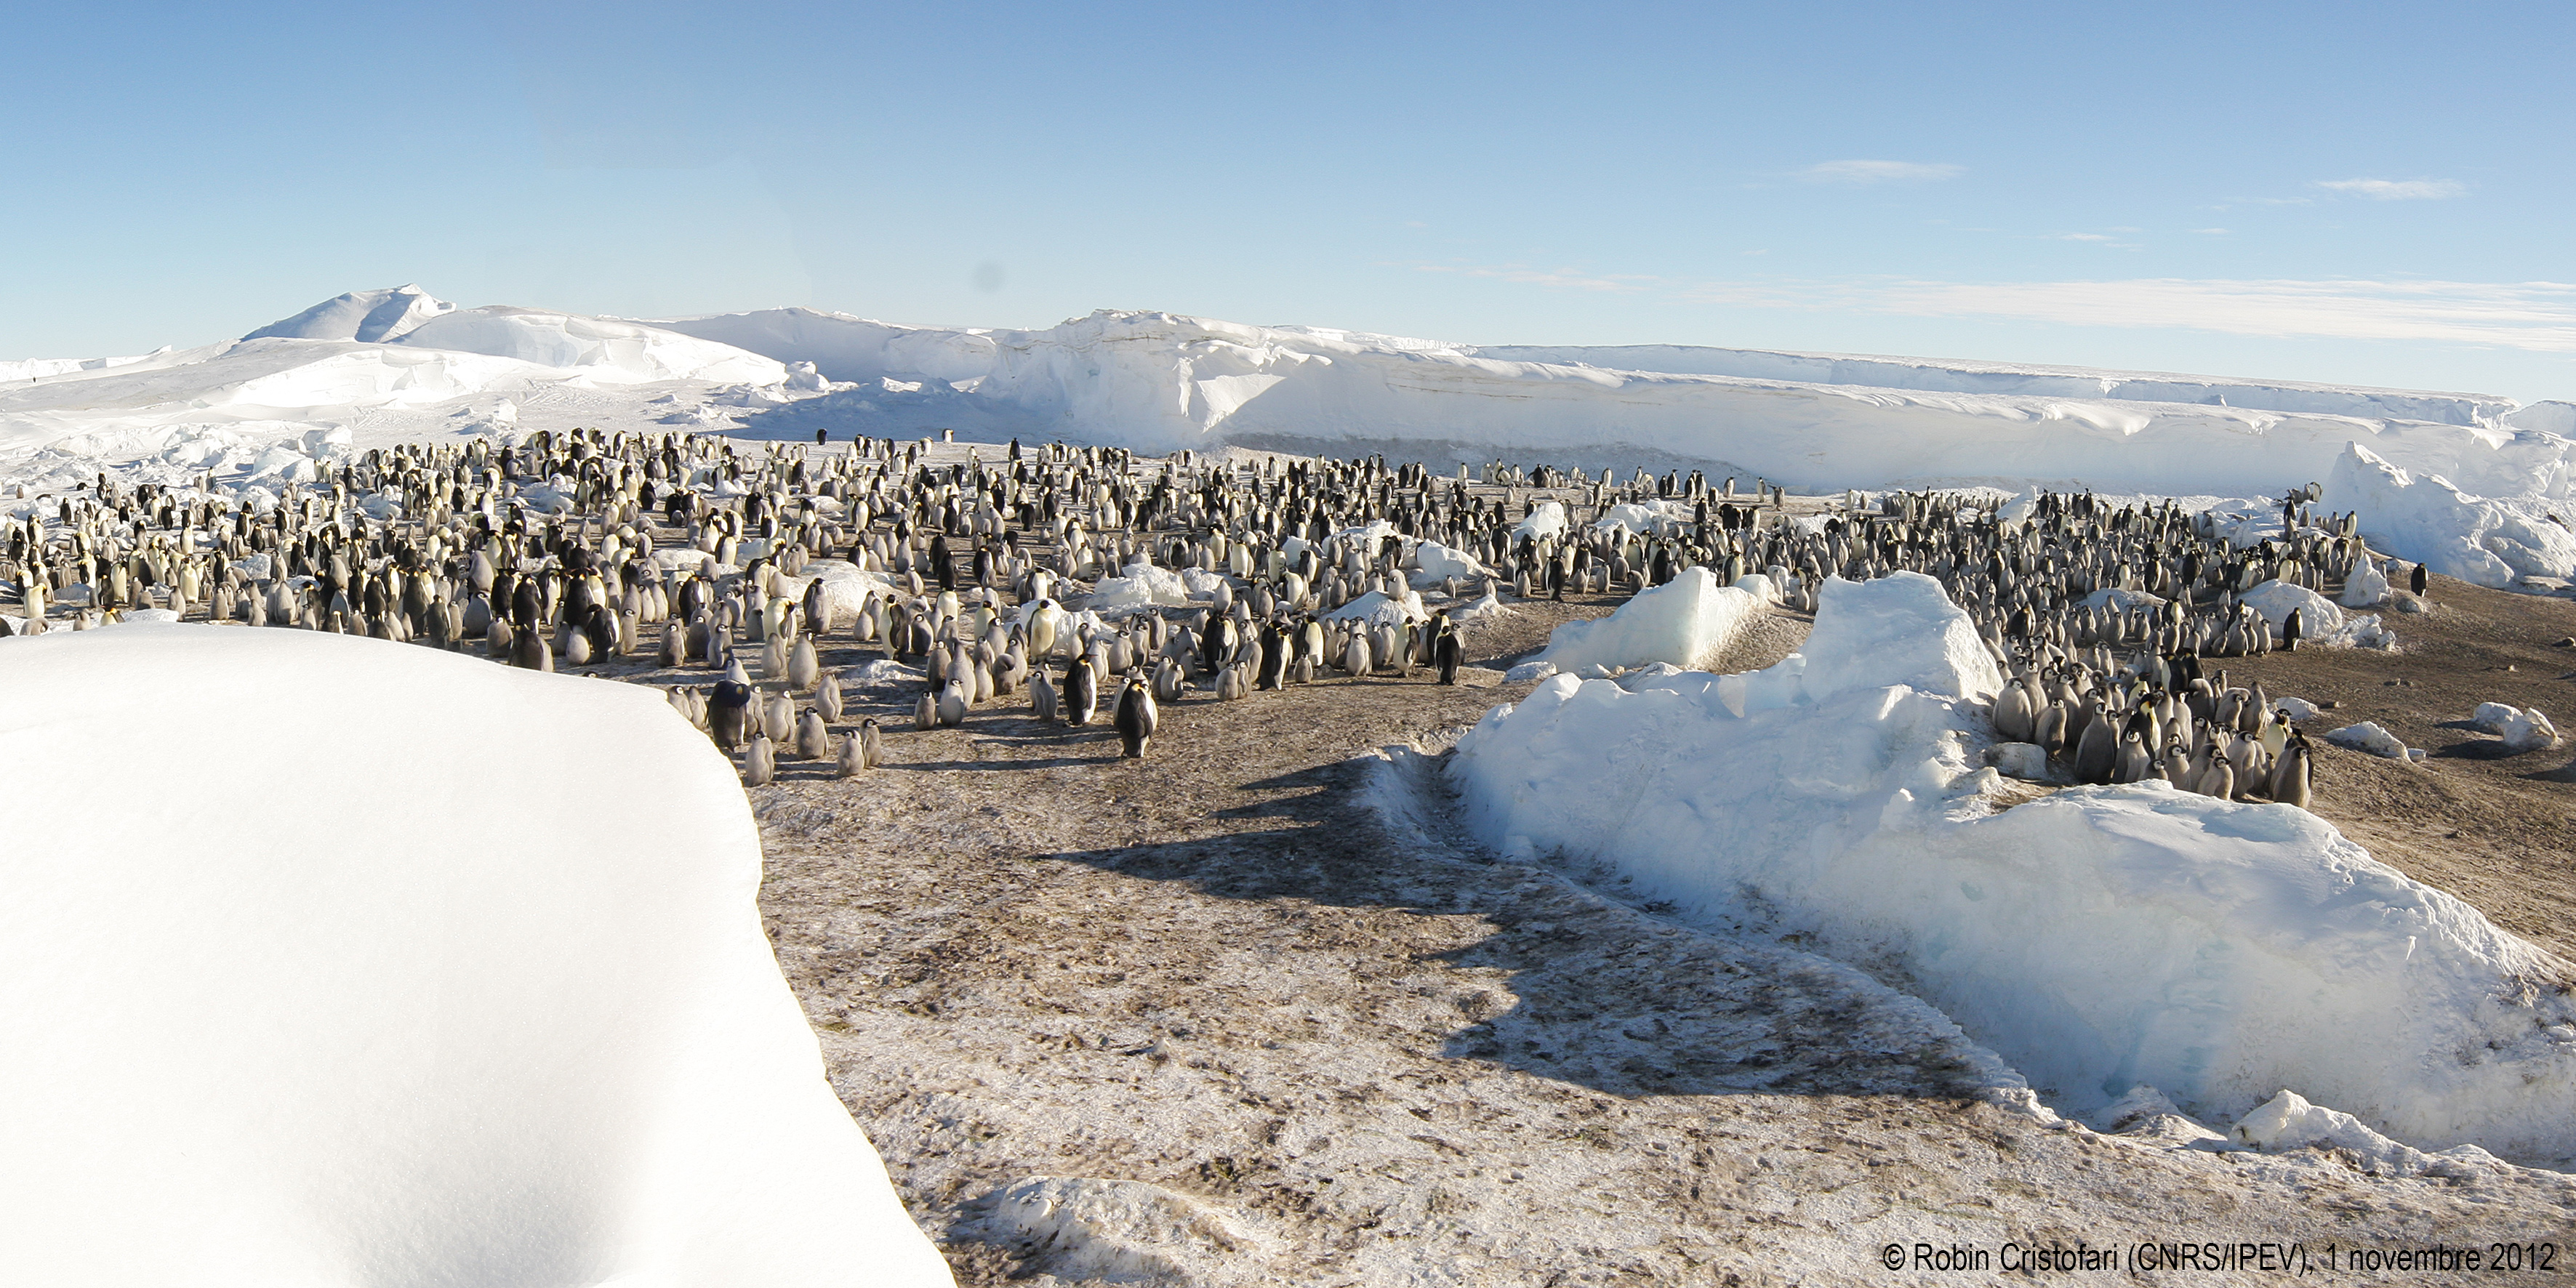 La colonie 1 de manchots empereurs sur la glace de mer a pu être observée grâce à d'importants moyens qui ont permis de naviguer dans ces glaces. © Robin Cristofari/CNRS-Ipev